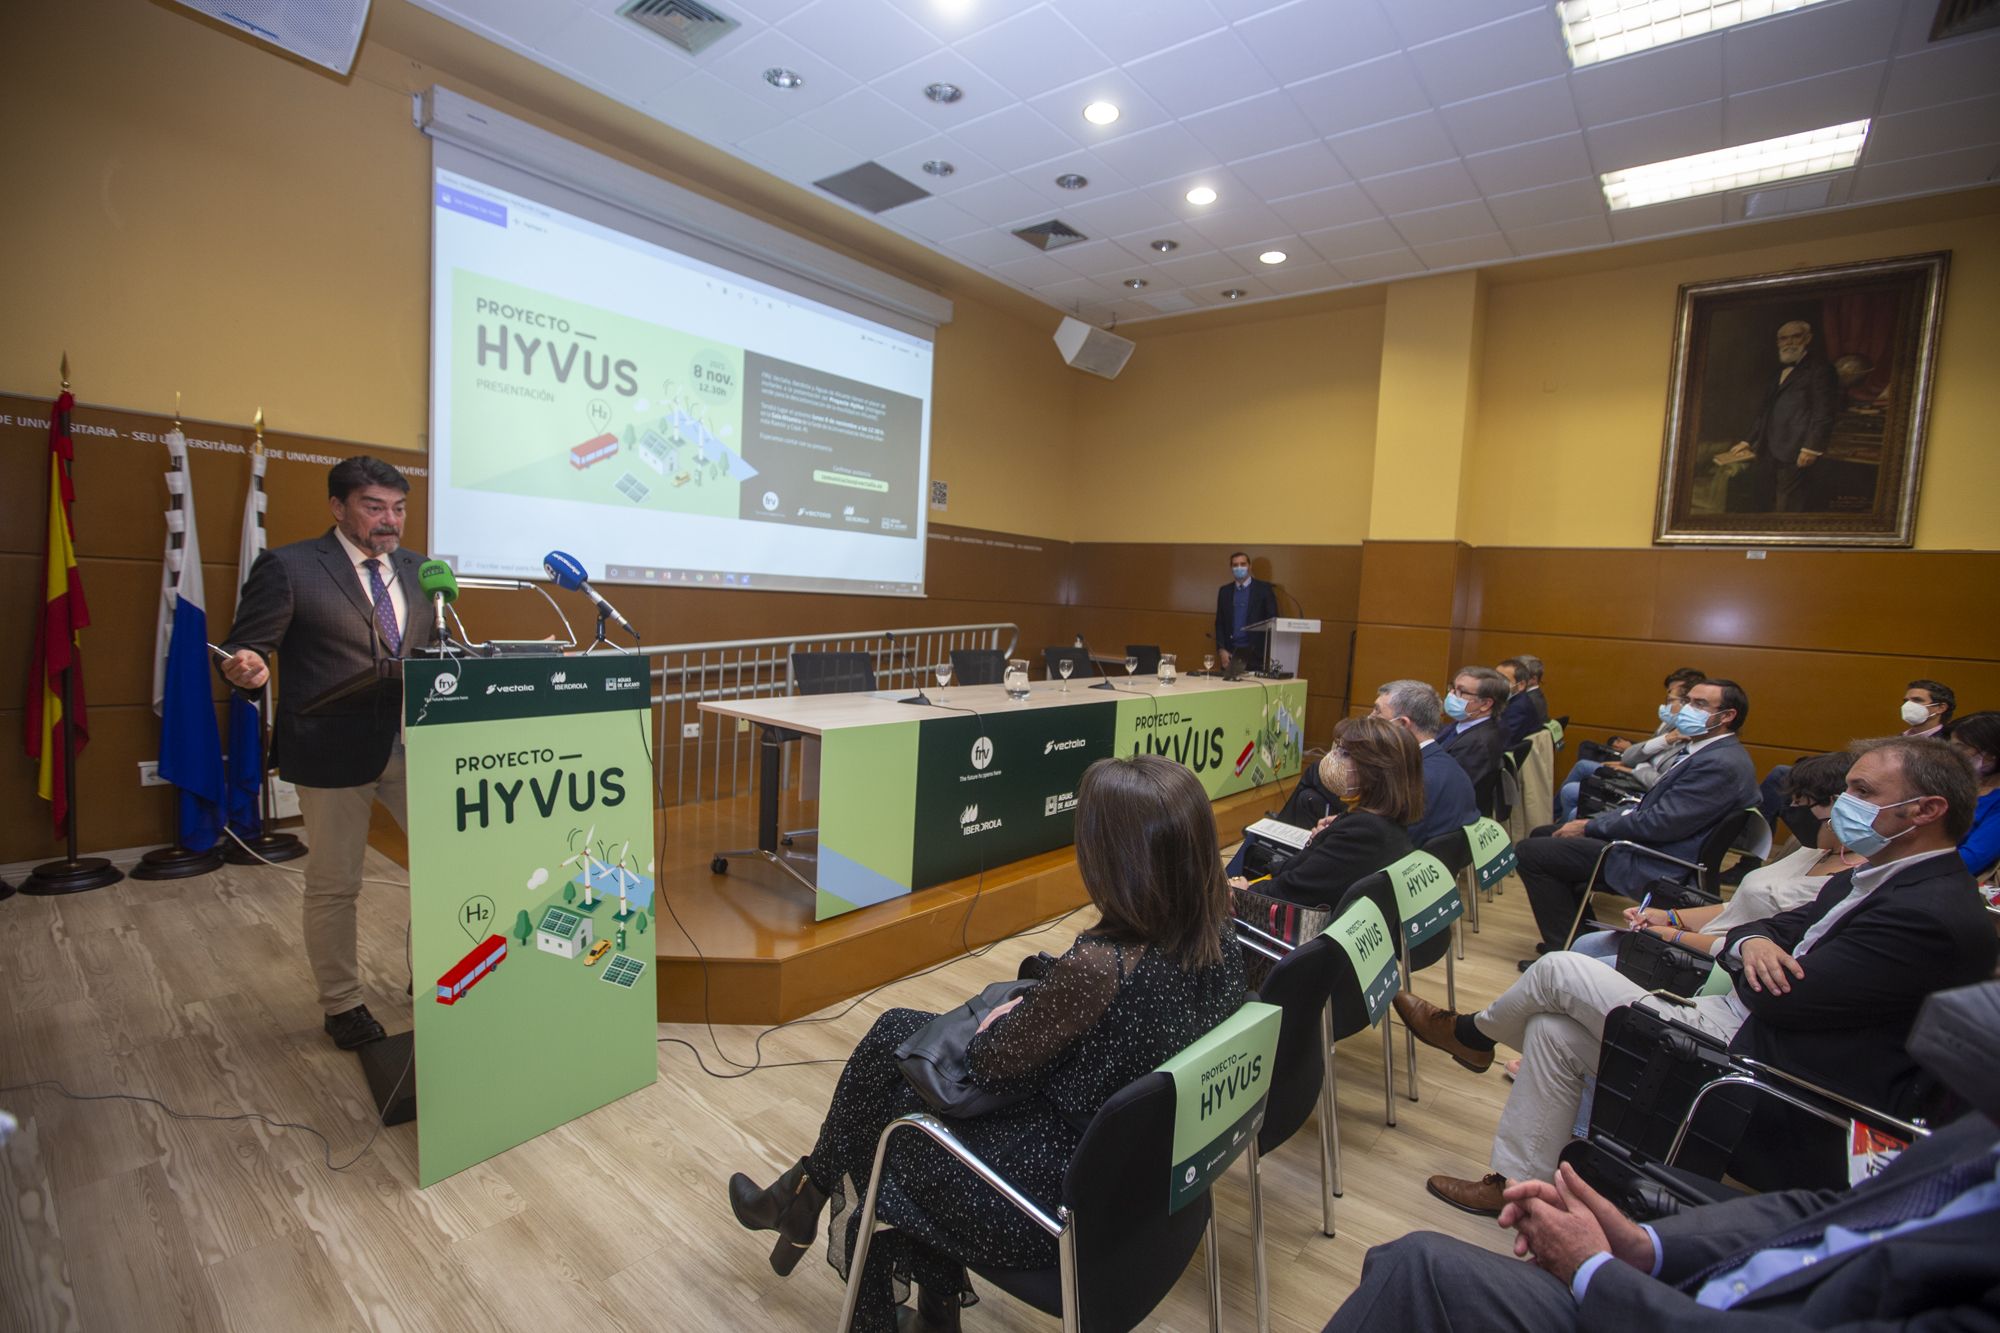 Vectalia, Iberdrola, Aguas de Alicante y el fondo catarí FRV impulsan el proyecto HyVus